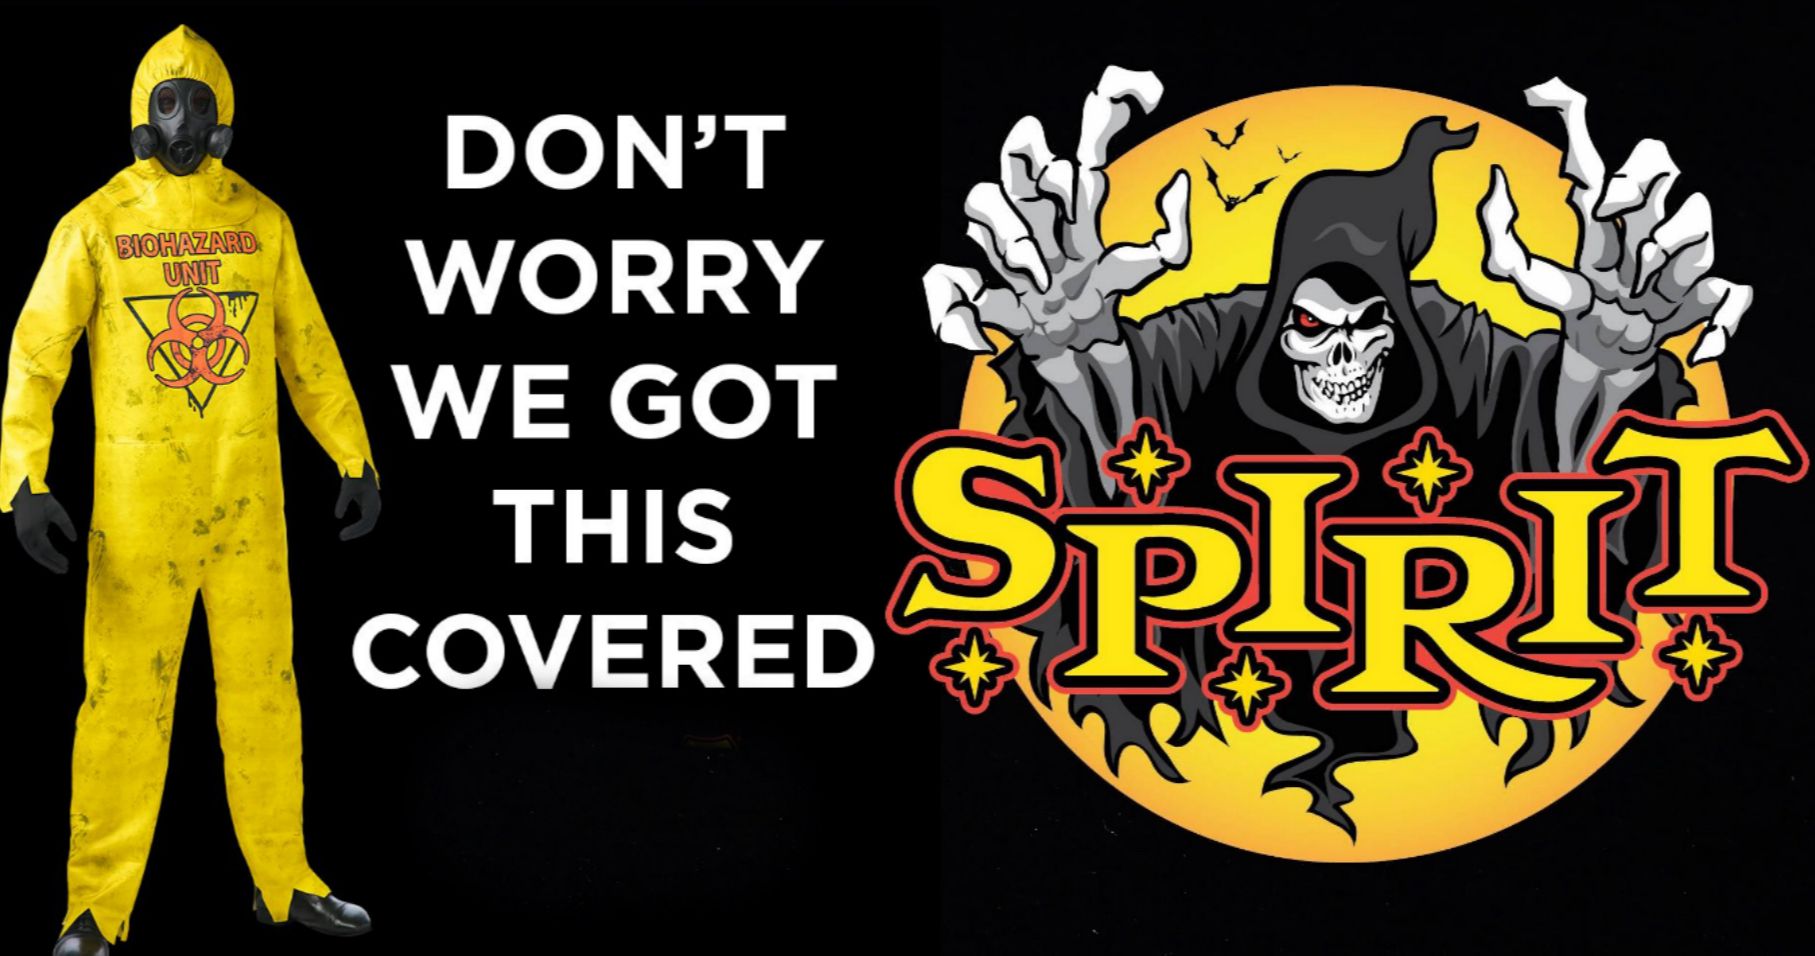 Spirit Halloween Will Keep All 1,400 Stores Open Despite Health Concerns